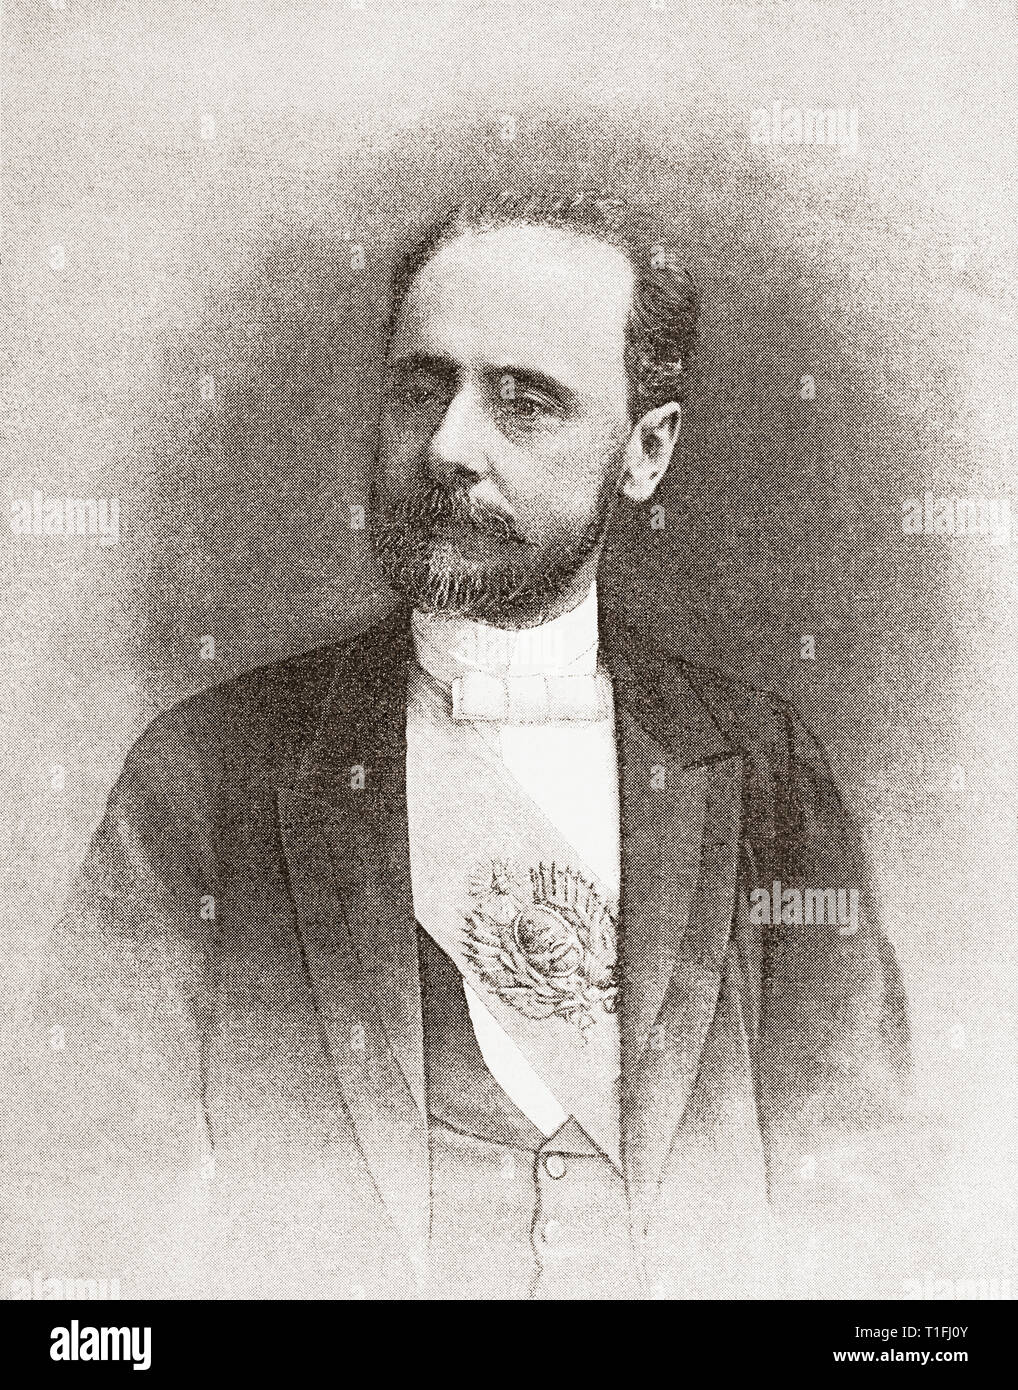 Miguel Angel Juarez Celman, 1844 - 1909. Avvocato, politico e presidente dell'Argentina. Da Ilustracion Artistica, pubblicato 1887. Foto Stock